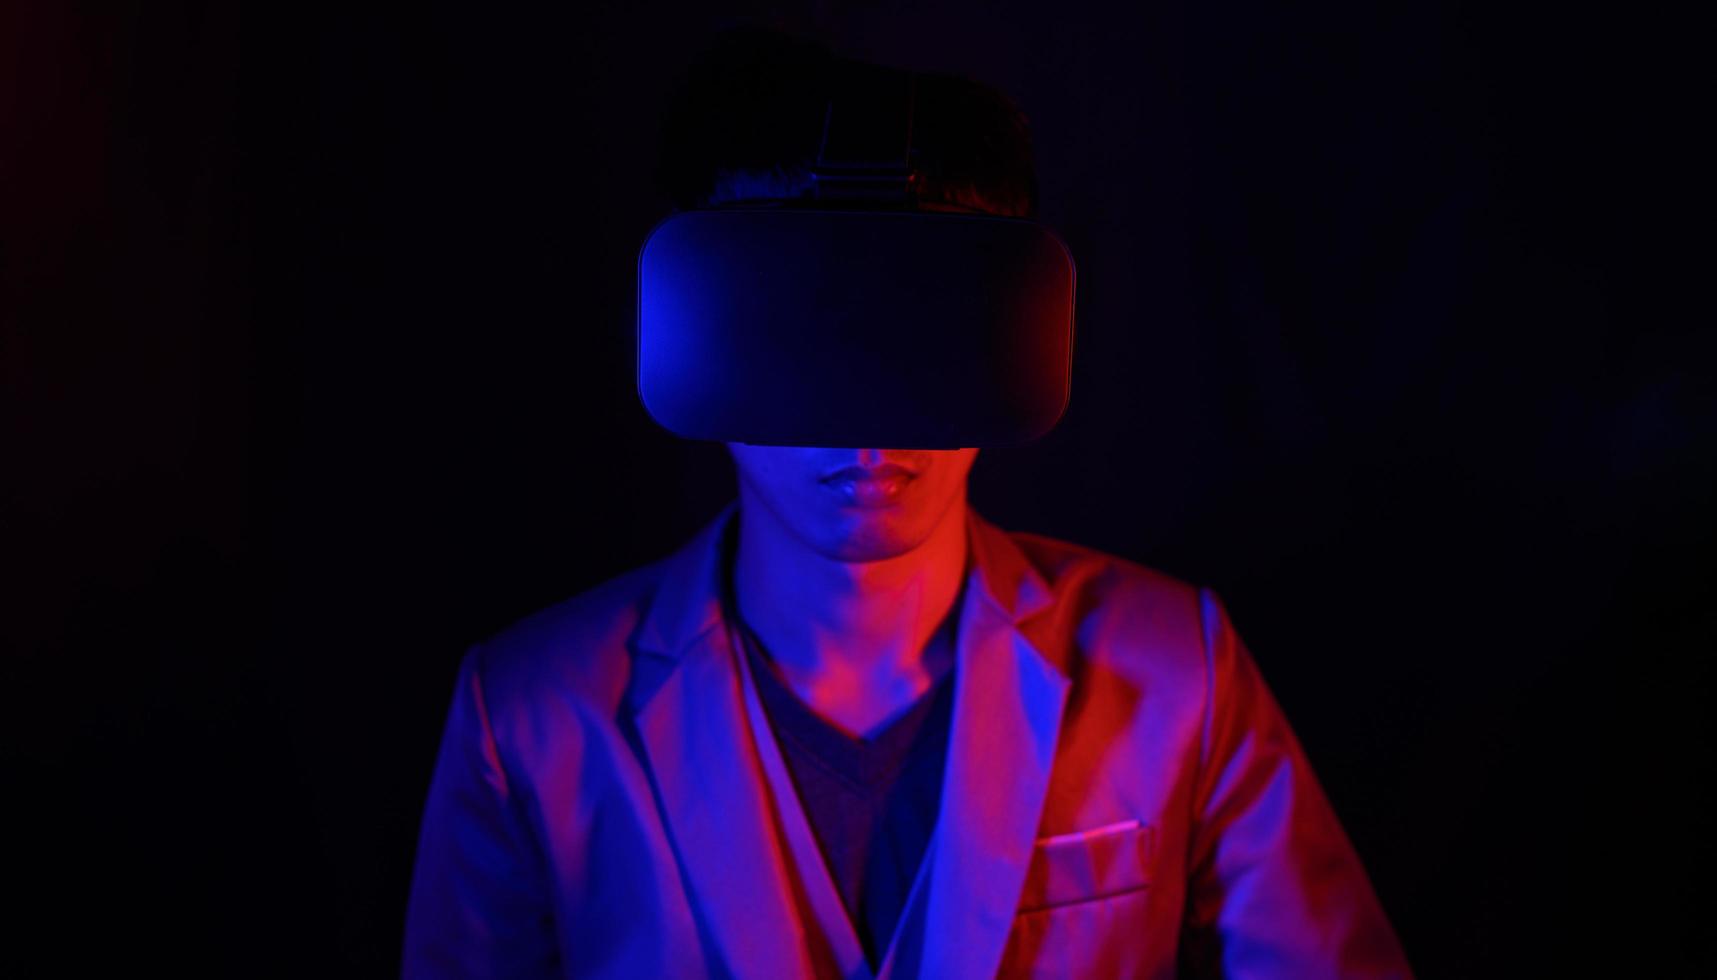 Brille der virtuellen Realität. Augmented Reality, Spiel, zukünftiges Technologiekonzept. vr simulierte welt der metaverse körperhaltung futuristisches kleid foto